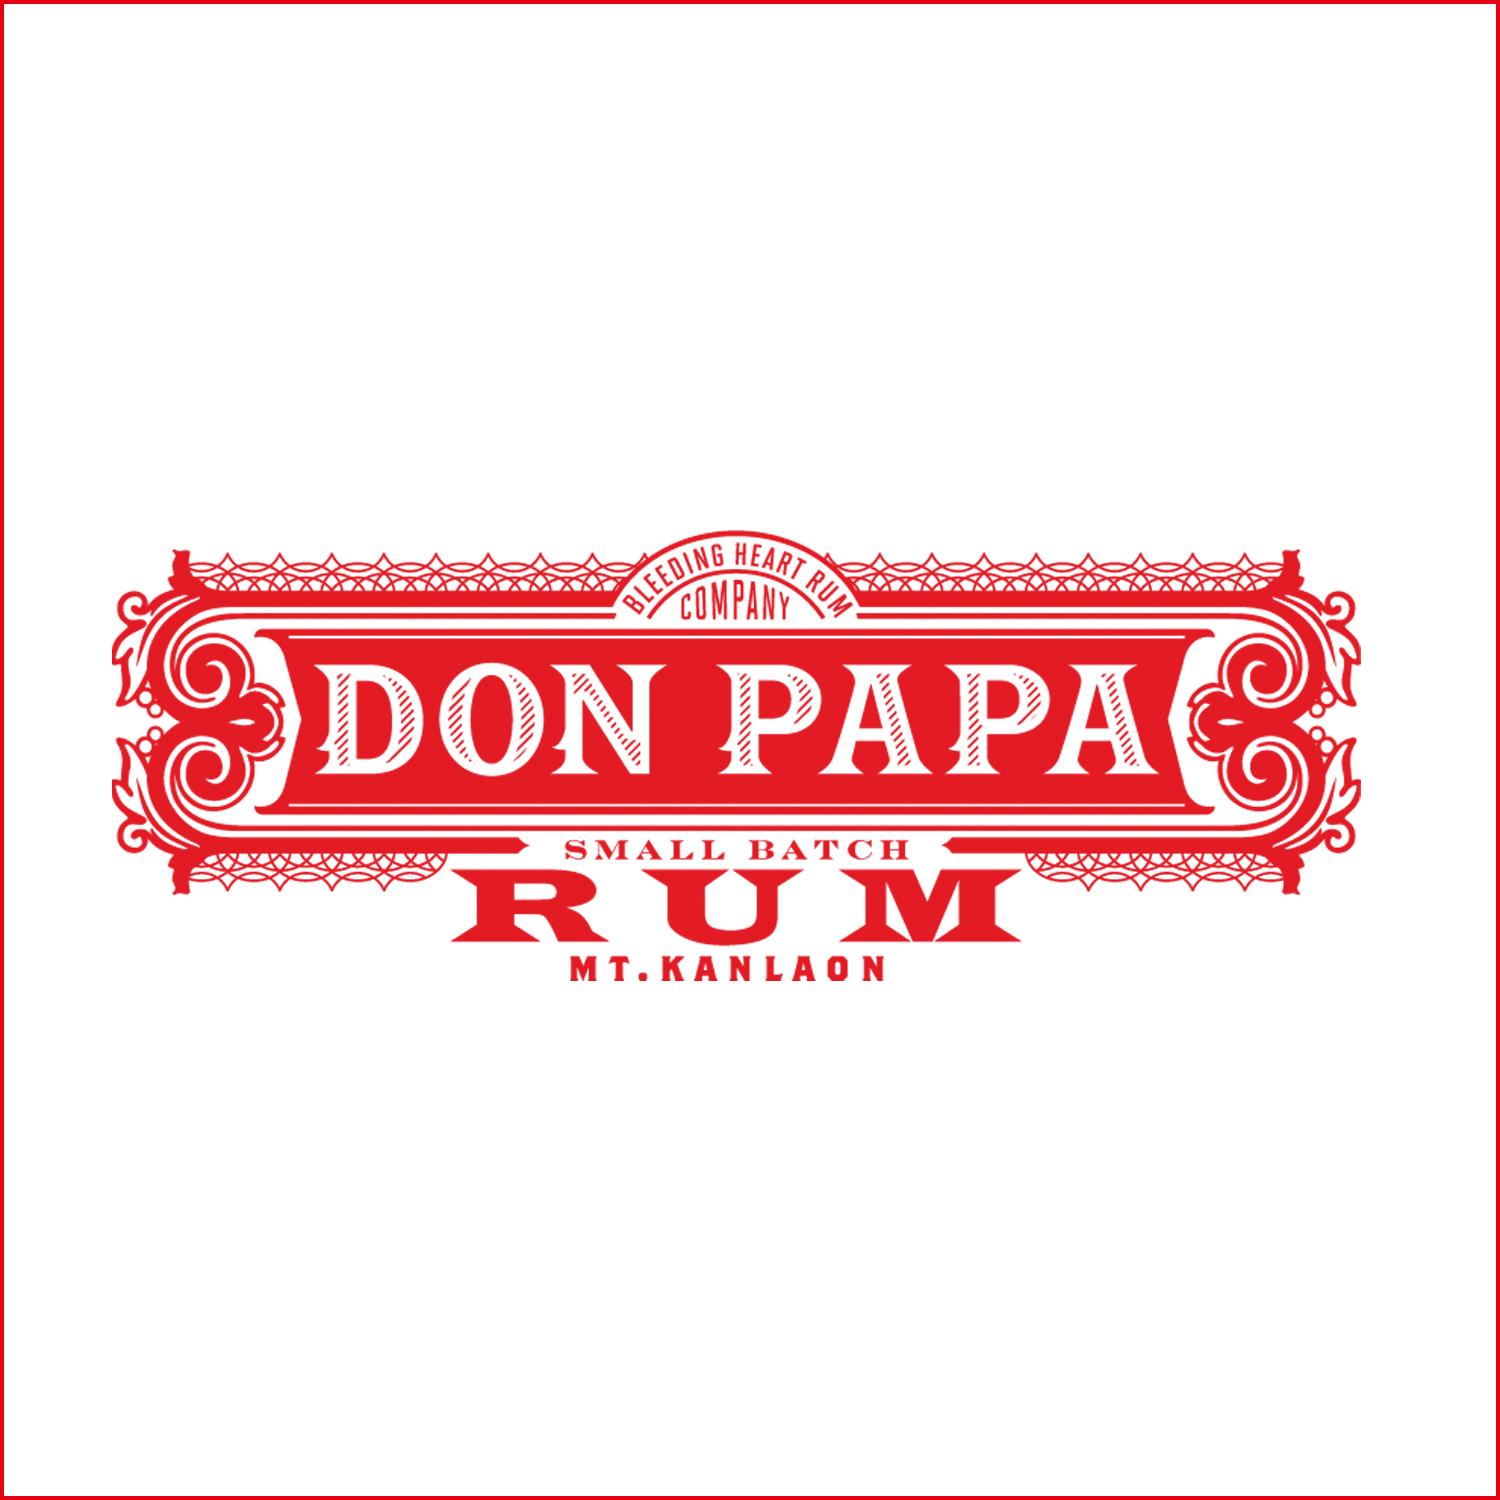 菲律賓桶爸爸 Don PaPa